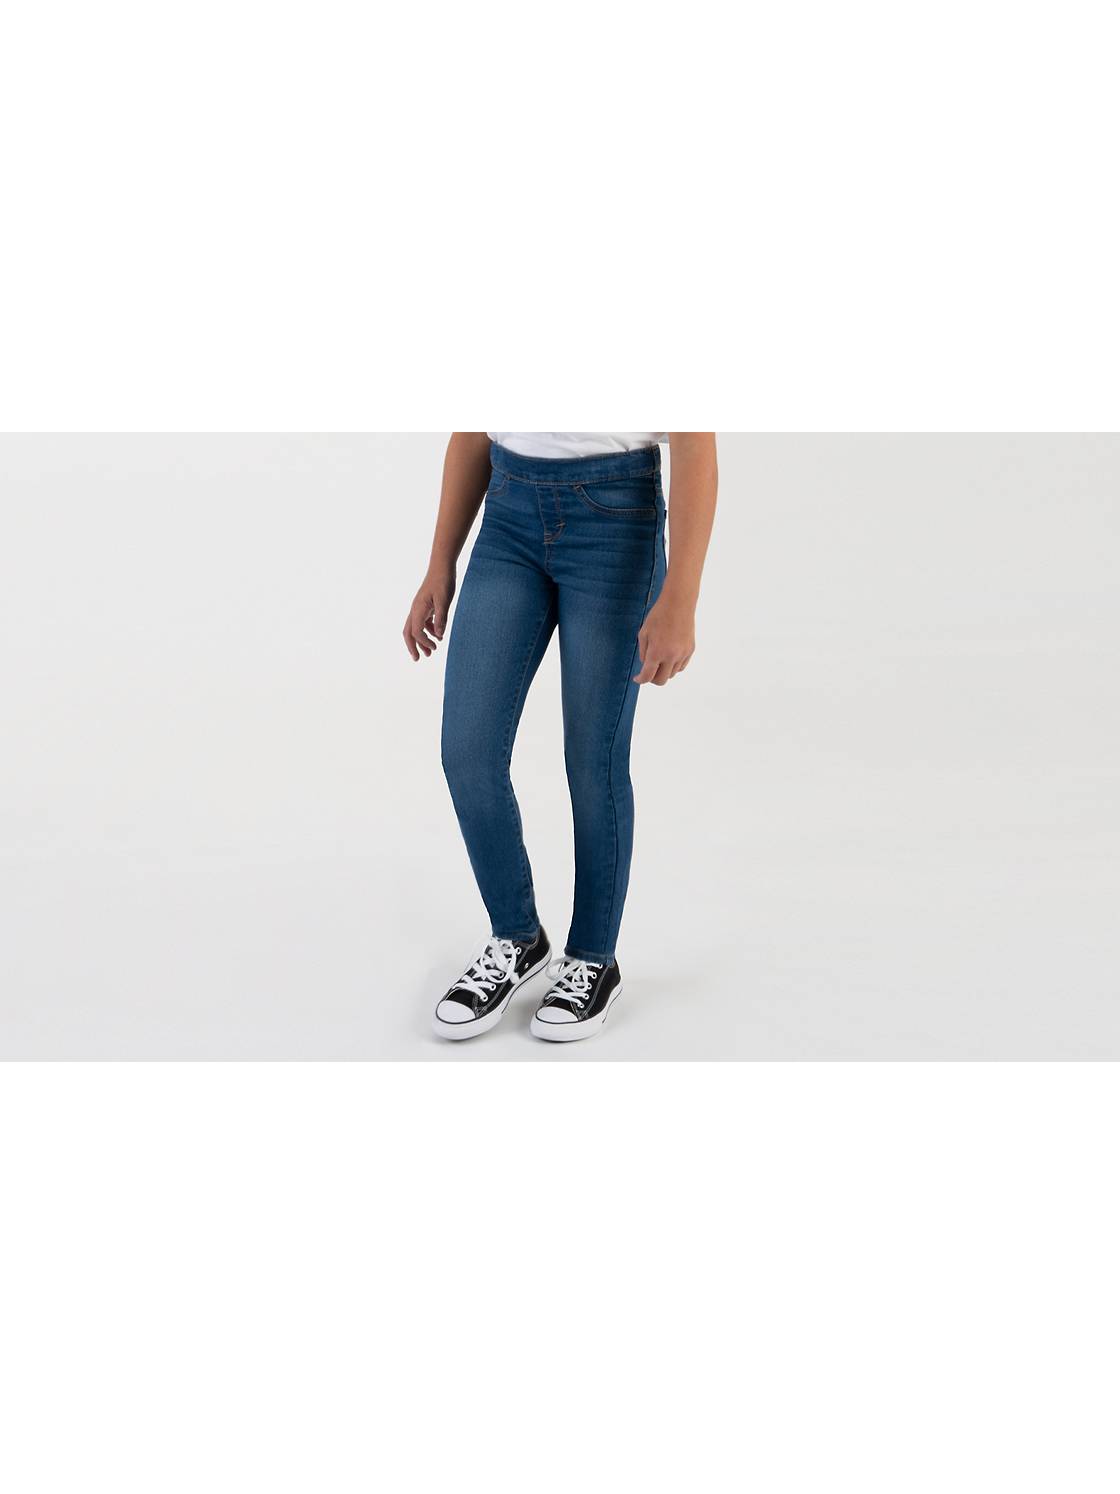 Girls Jeans & Leggings - Shop All Kids Girls' Skinny & More